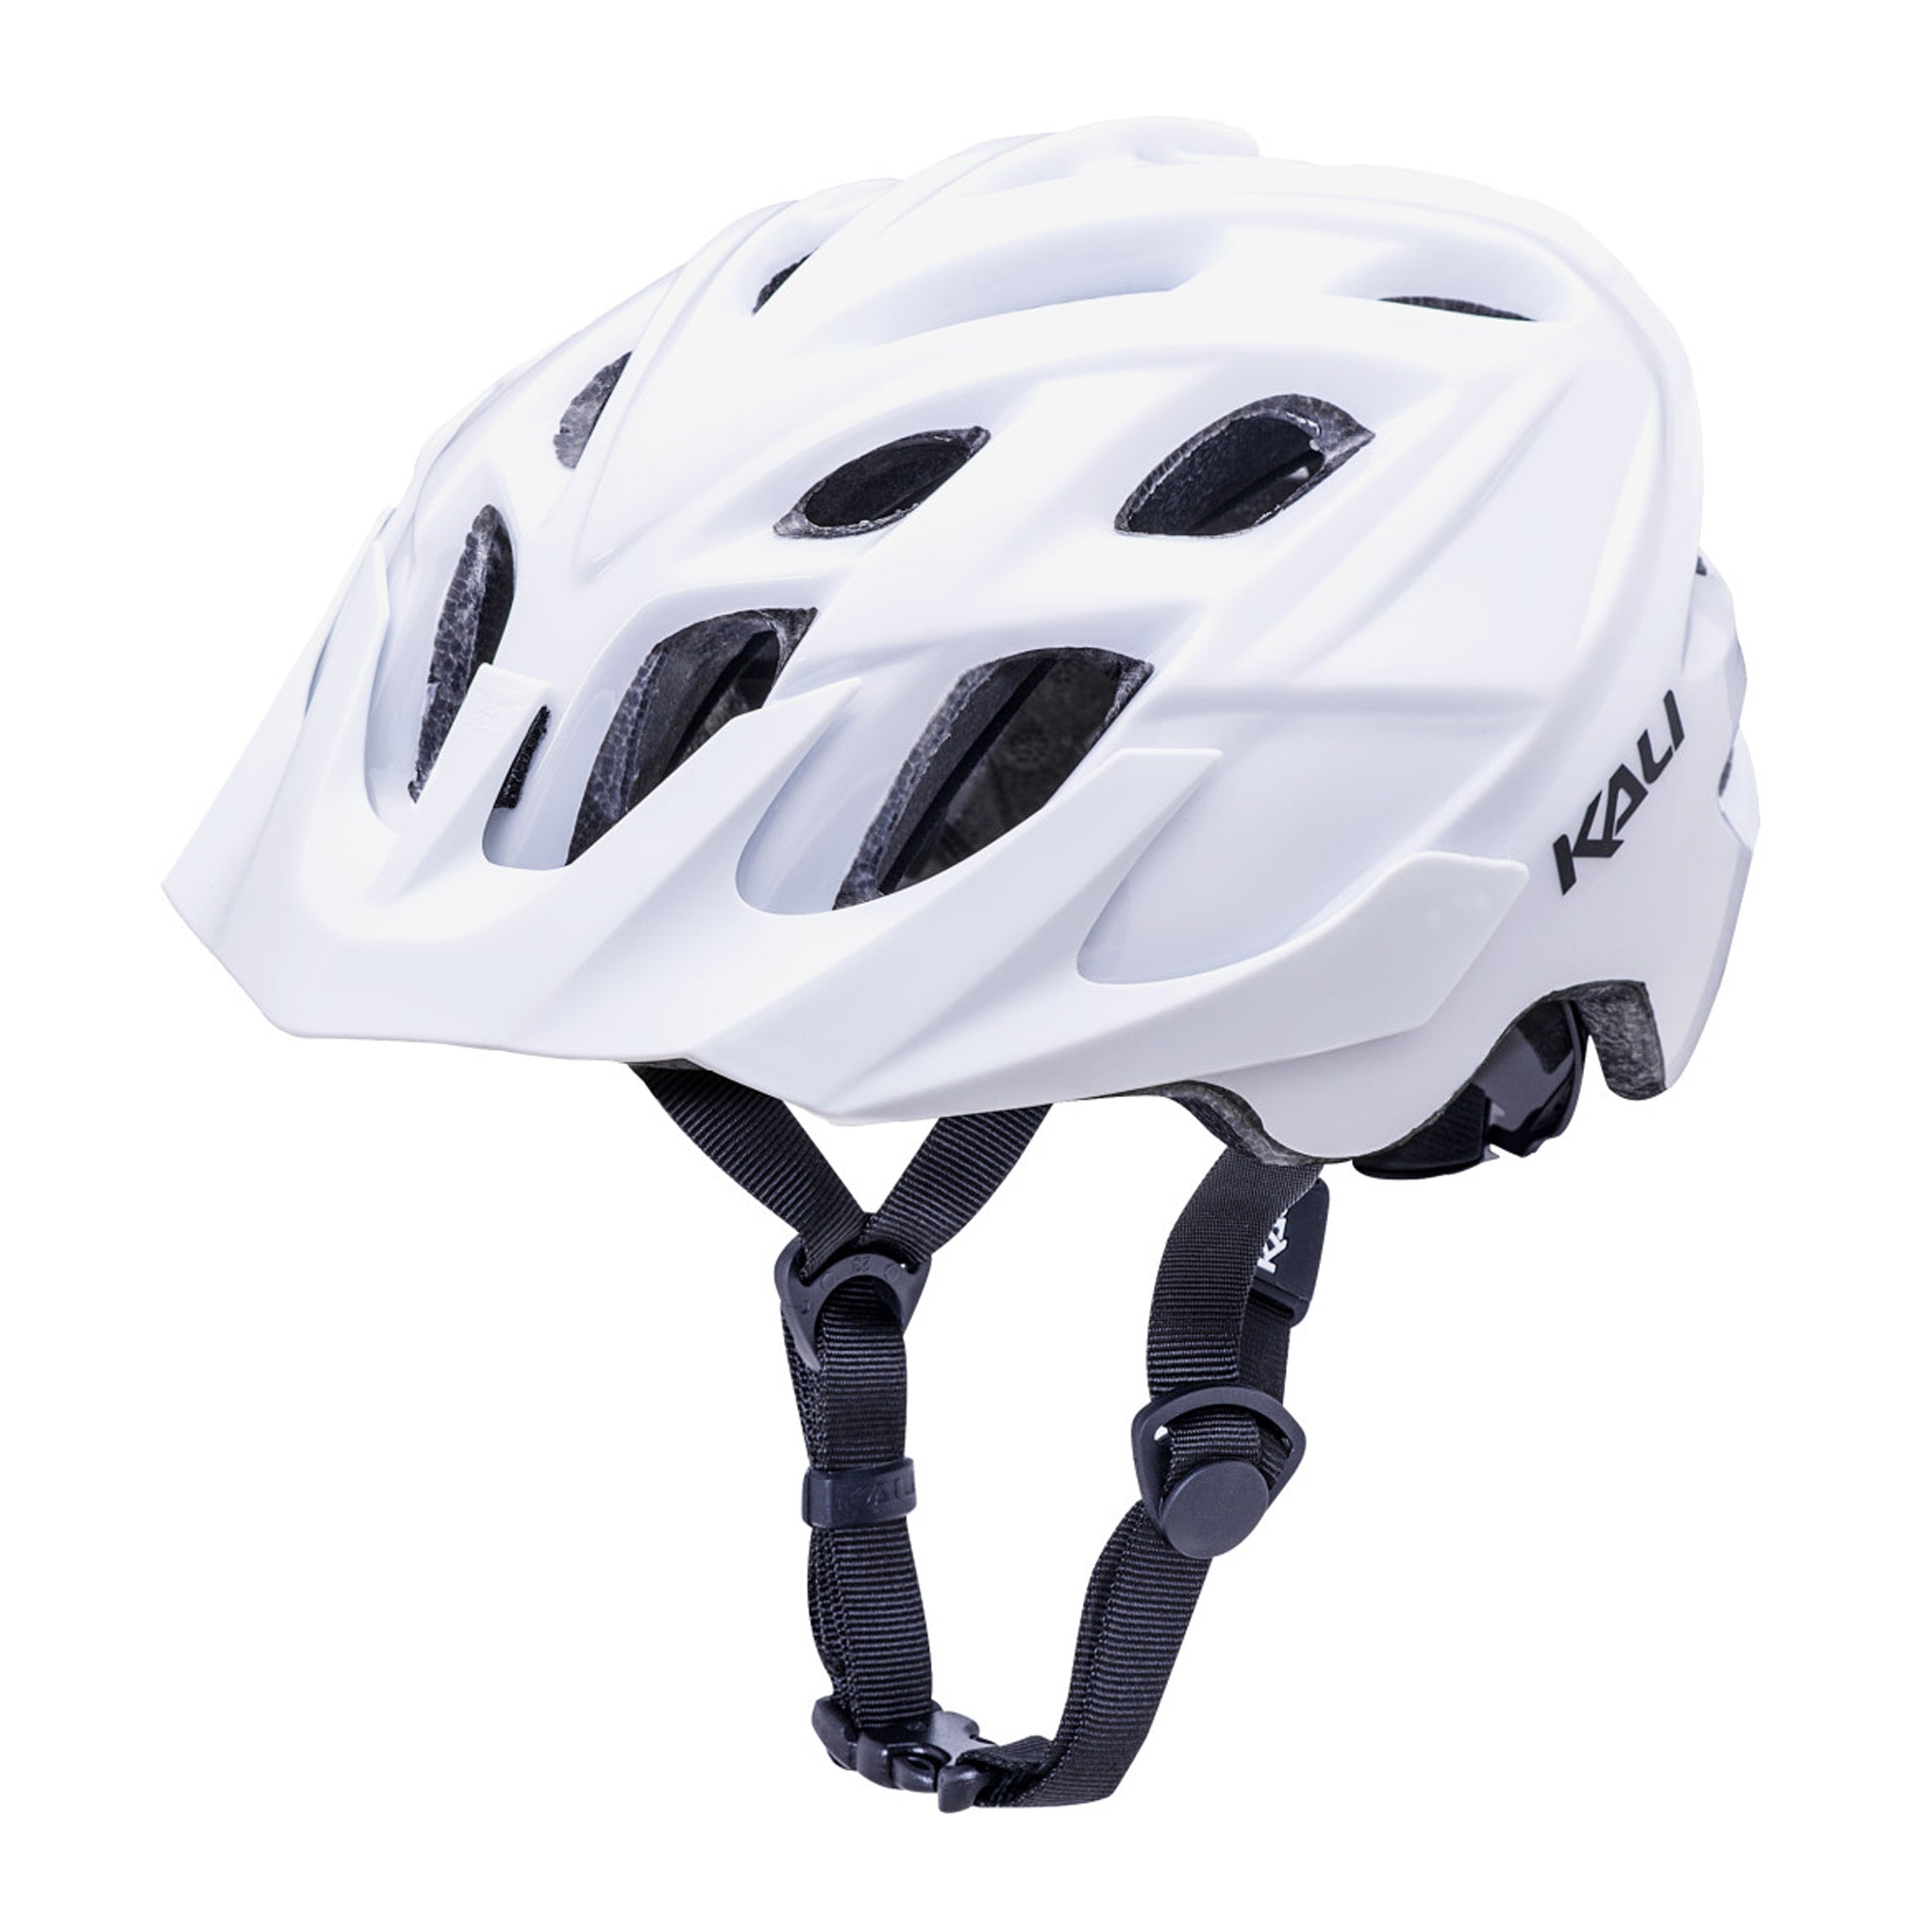 Kali Chakra Solo Trail Helmet Small/Mediuim White